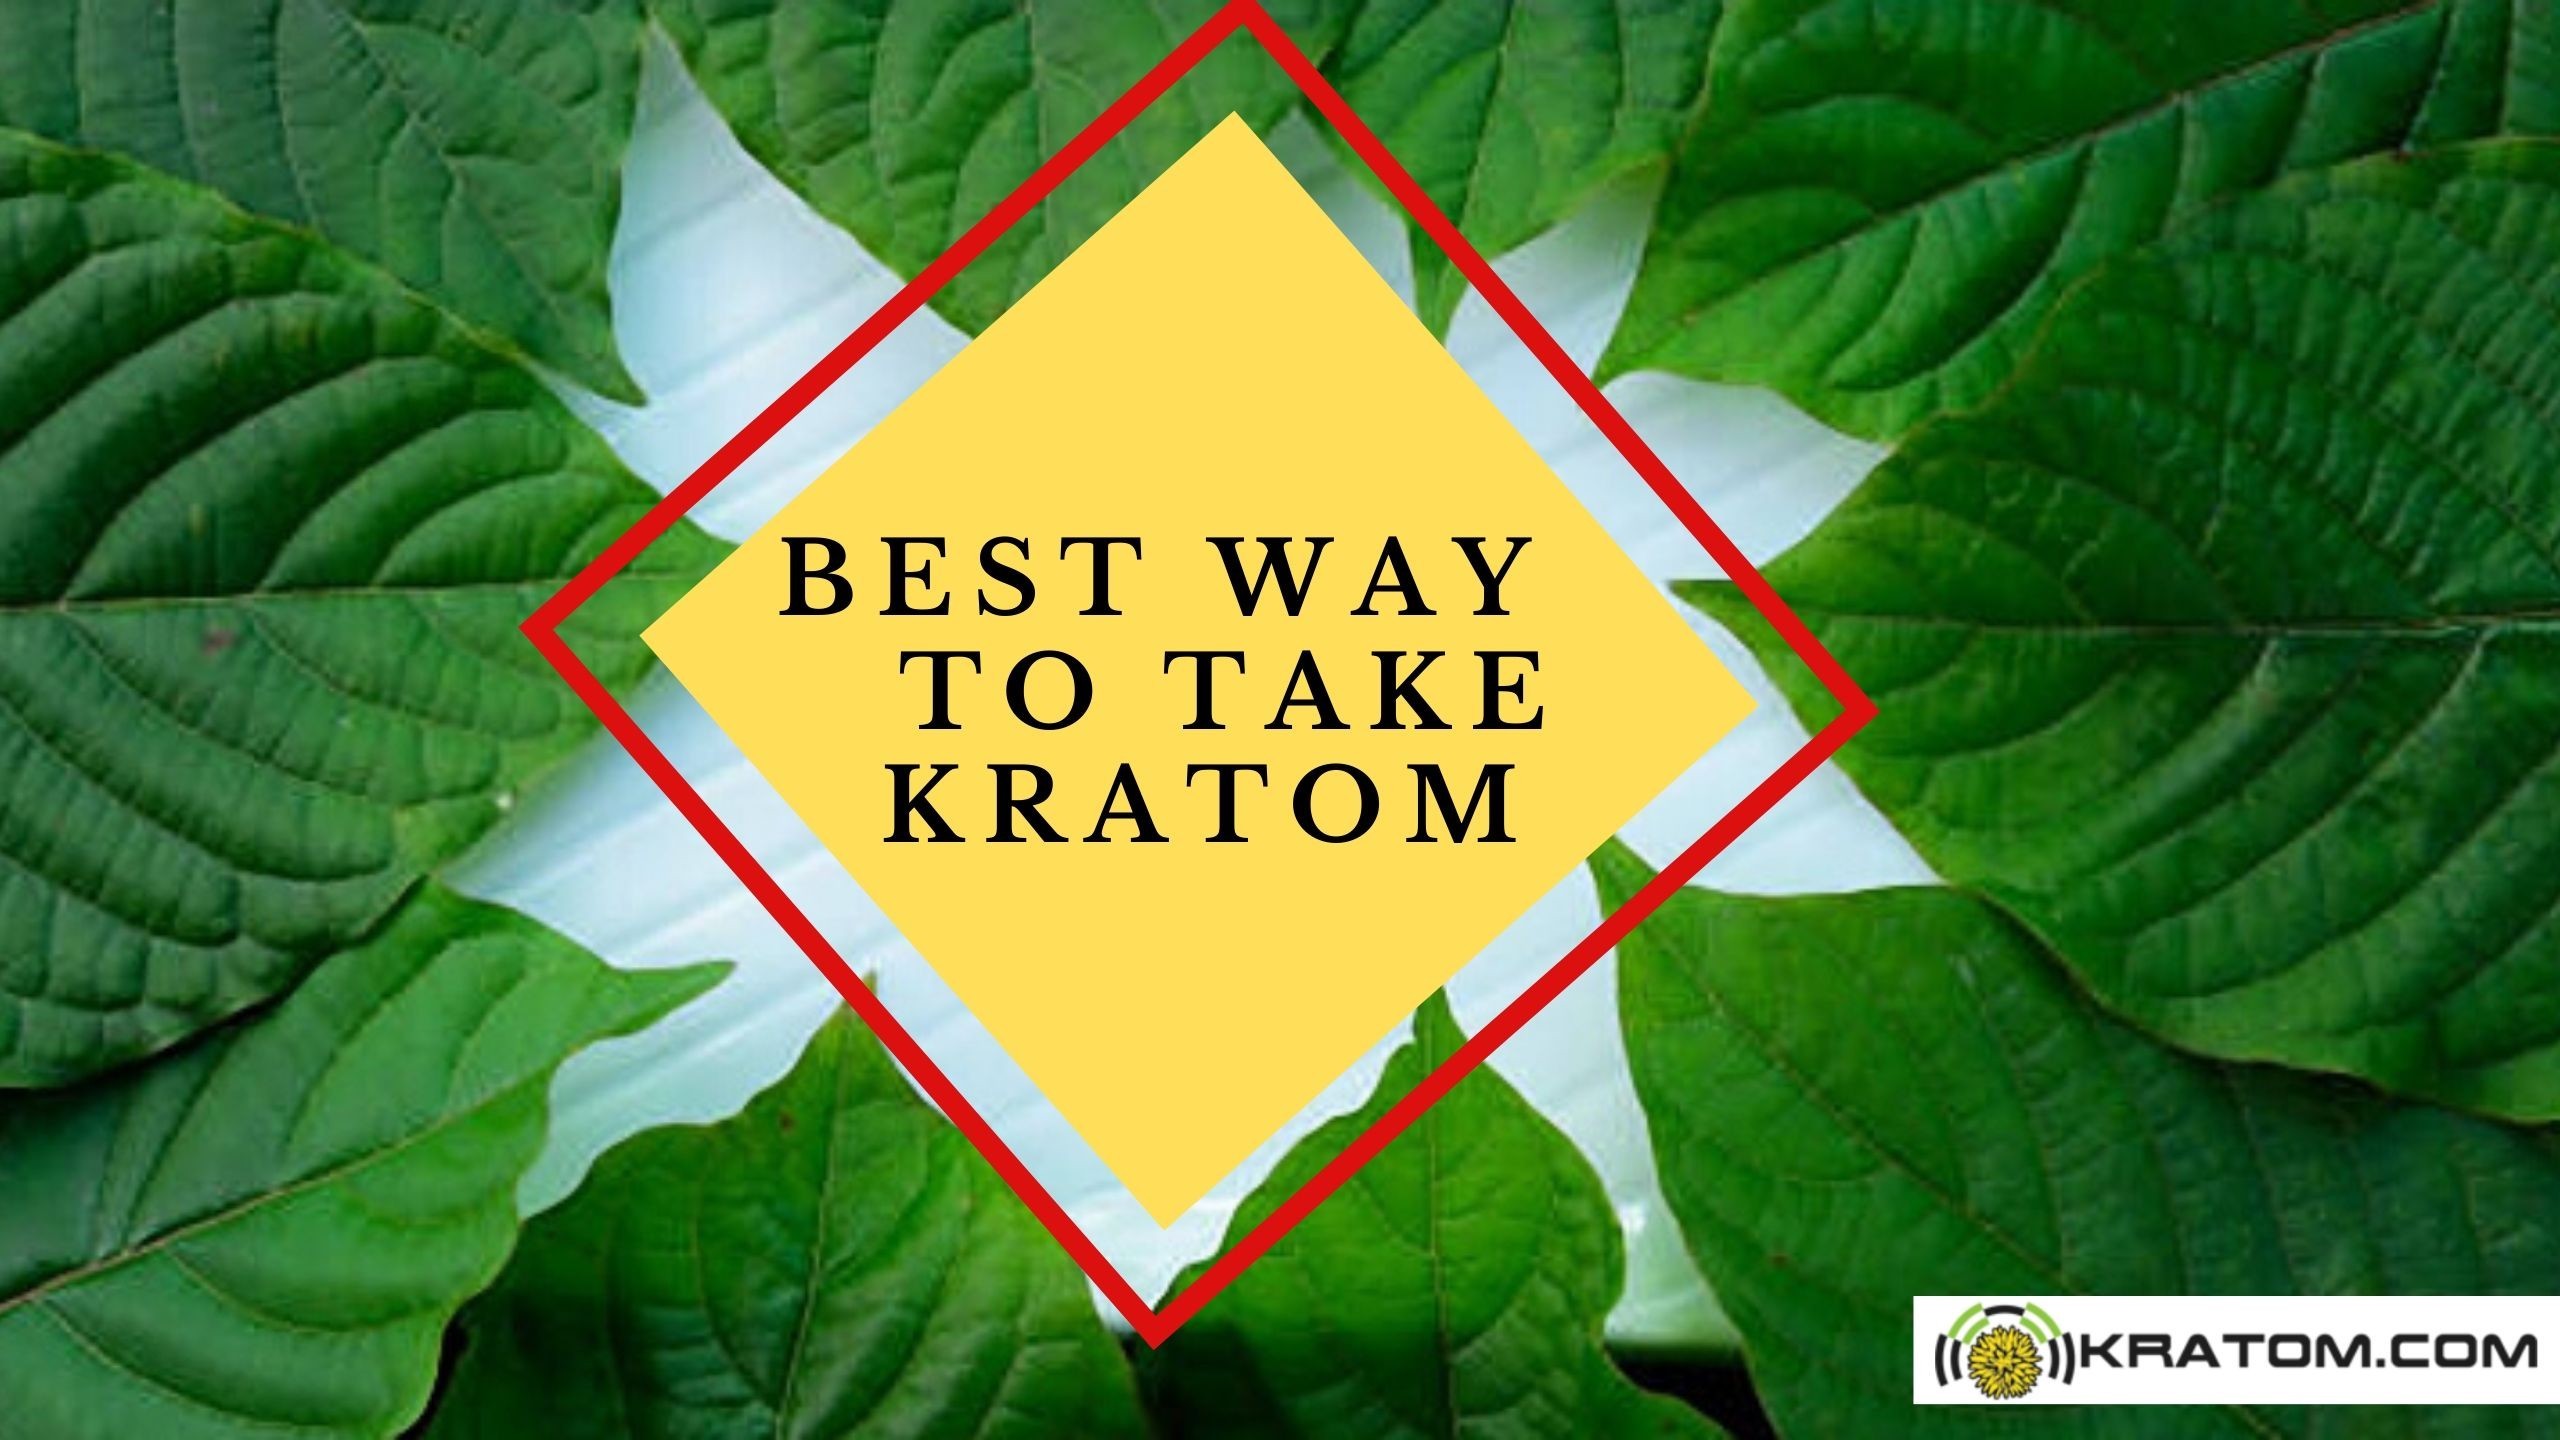 The 4 Best Ways to Take Kratom